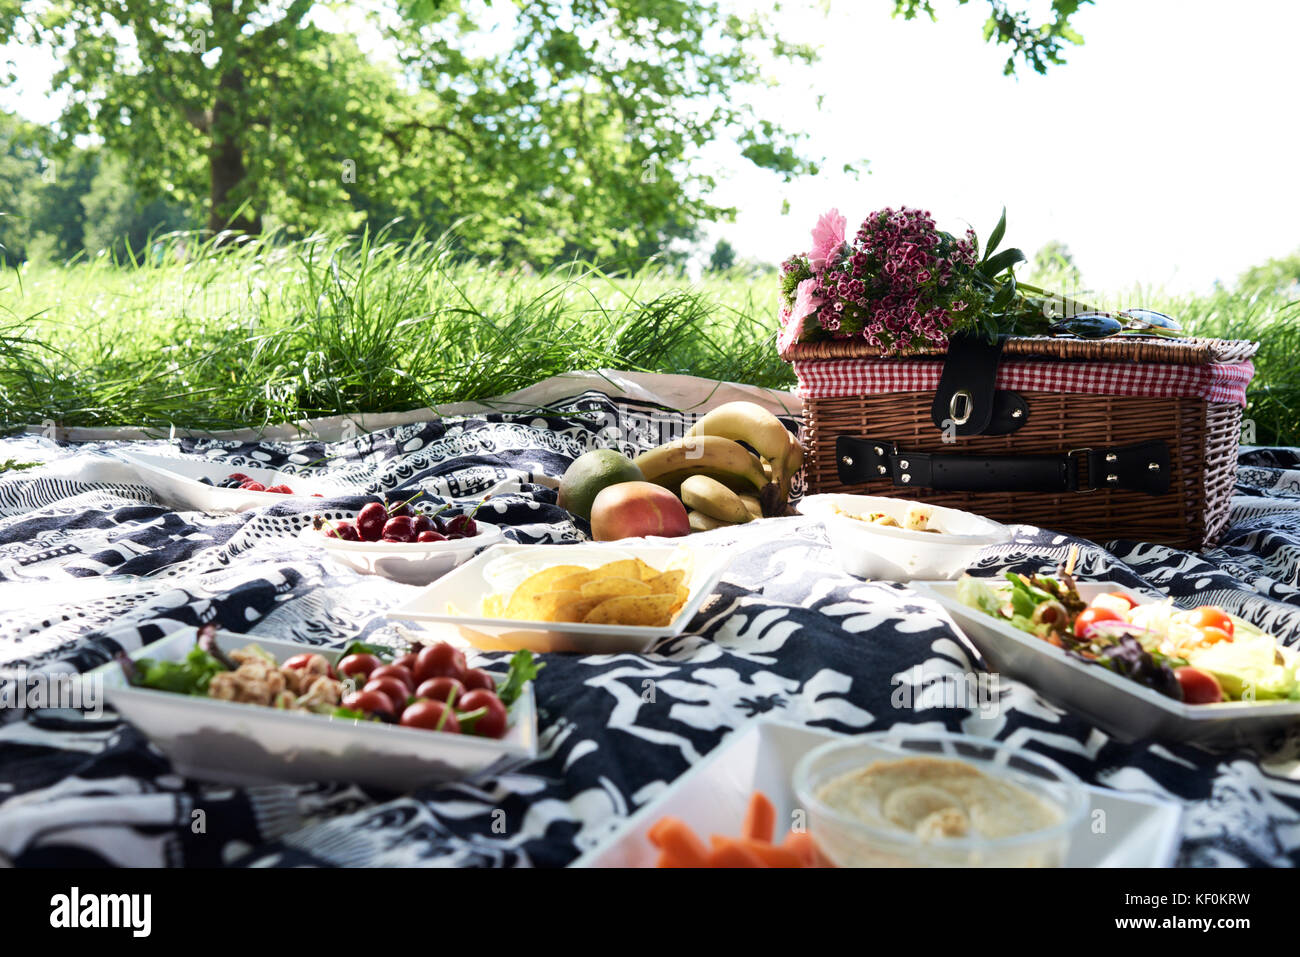 Regno Unito, London, Hampstead Heath Park, dettagli di cibo sano sulla coperta picnic, amici picnic al parco Foto Stock